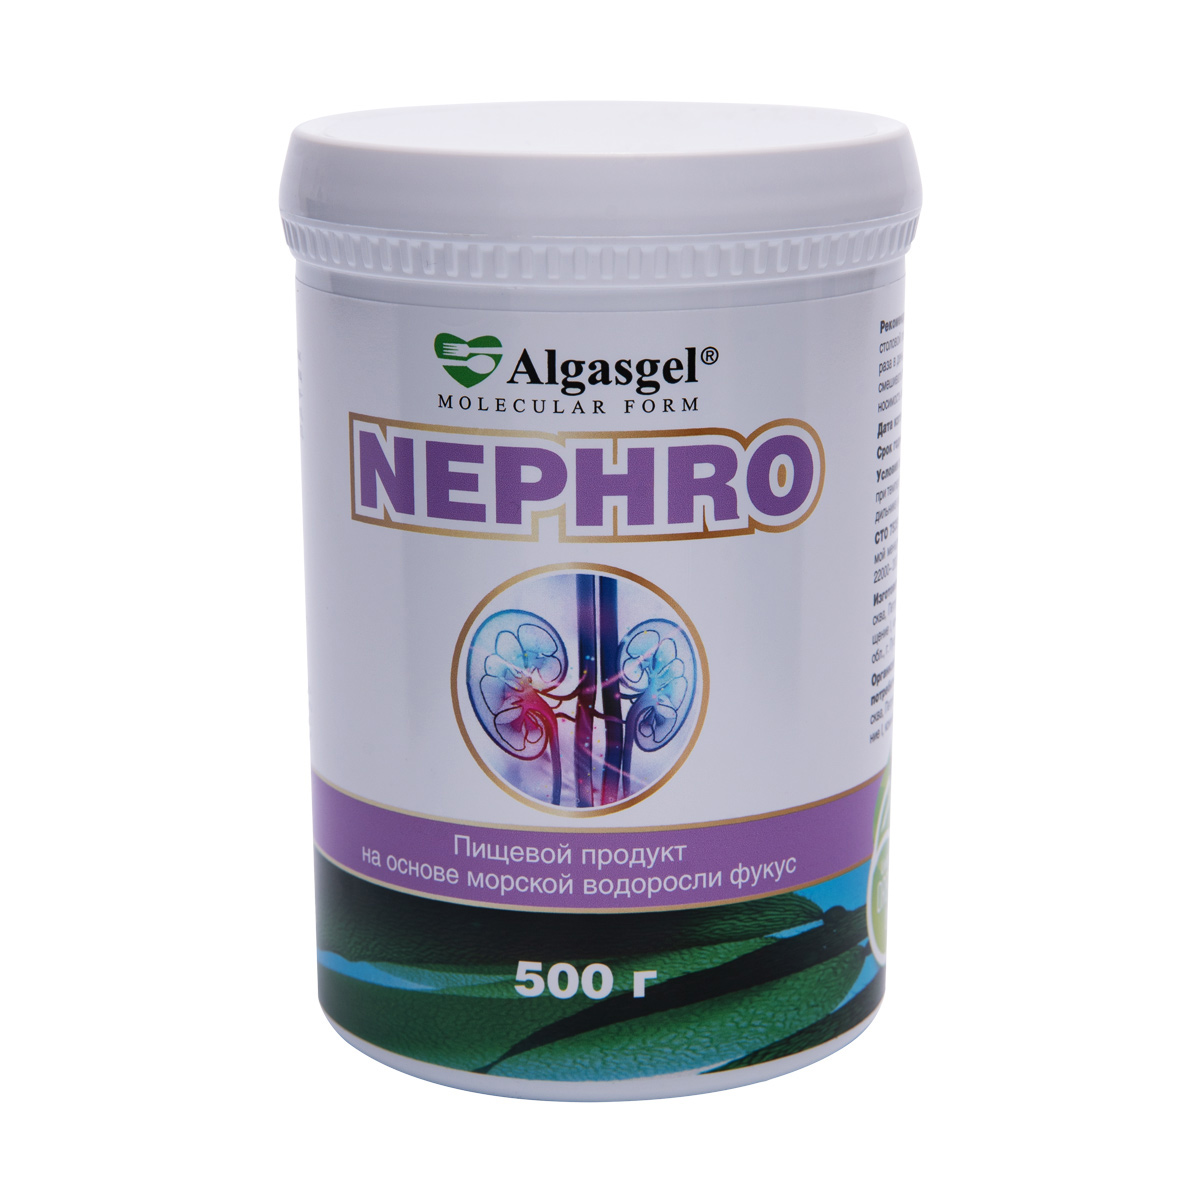 Algasgel Nephro для комплексного оздоровления почек и мочевыделительной системы (500 г) algasgel vita для восстановления организма 2 уп по 500 г 1 в подарок